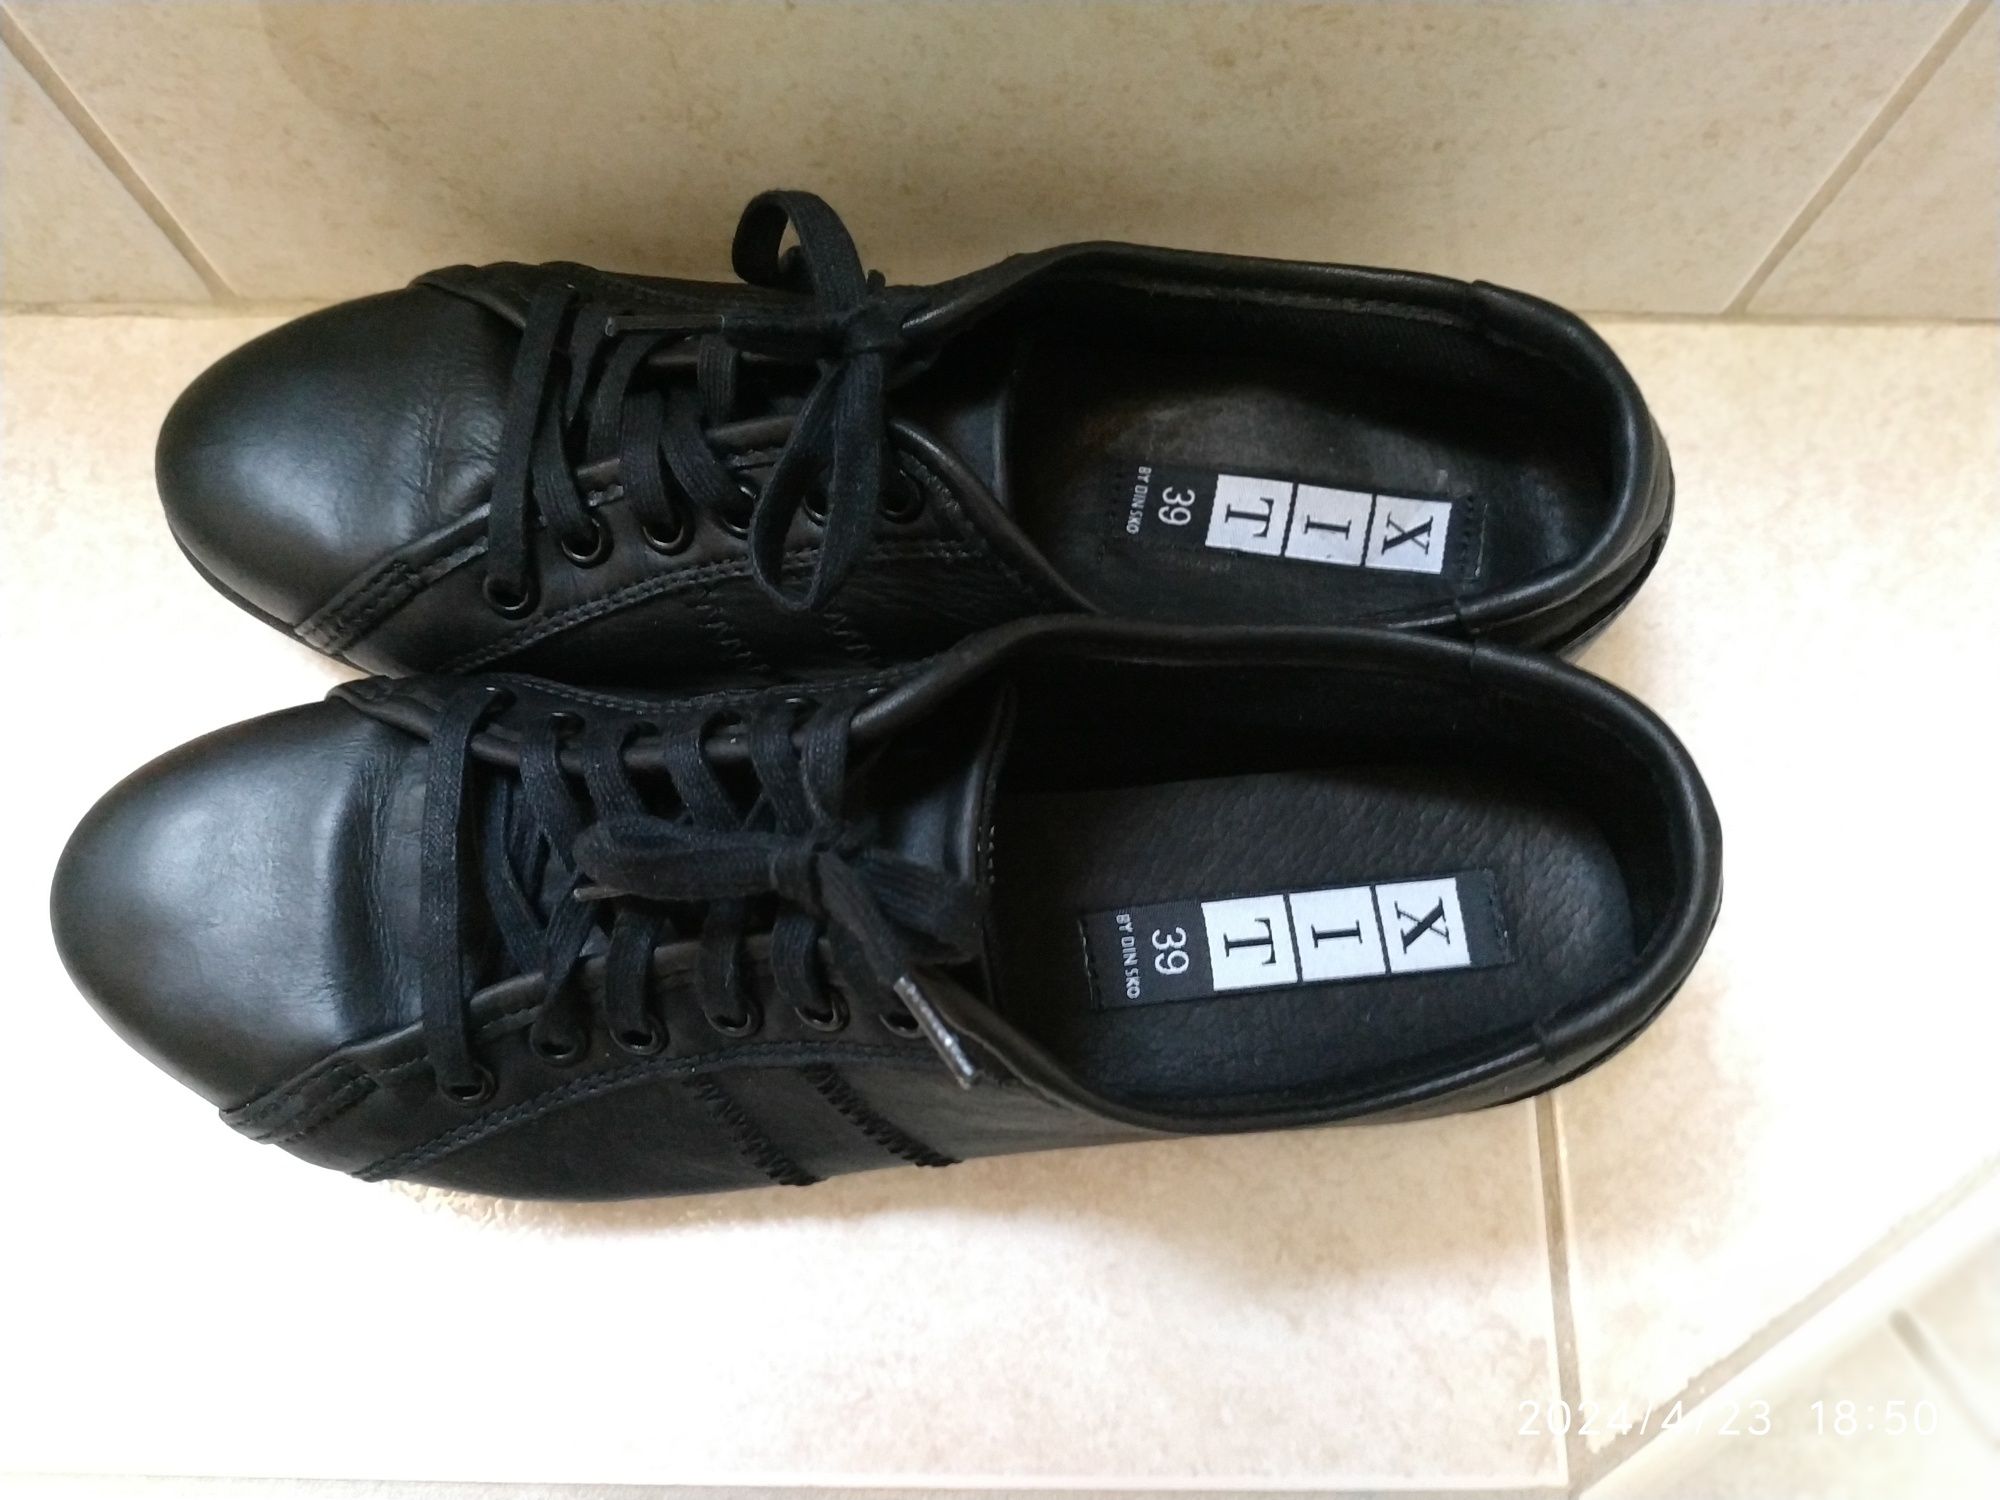 Buty damskie czarne skórzane, r 39, uzywane